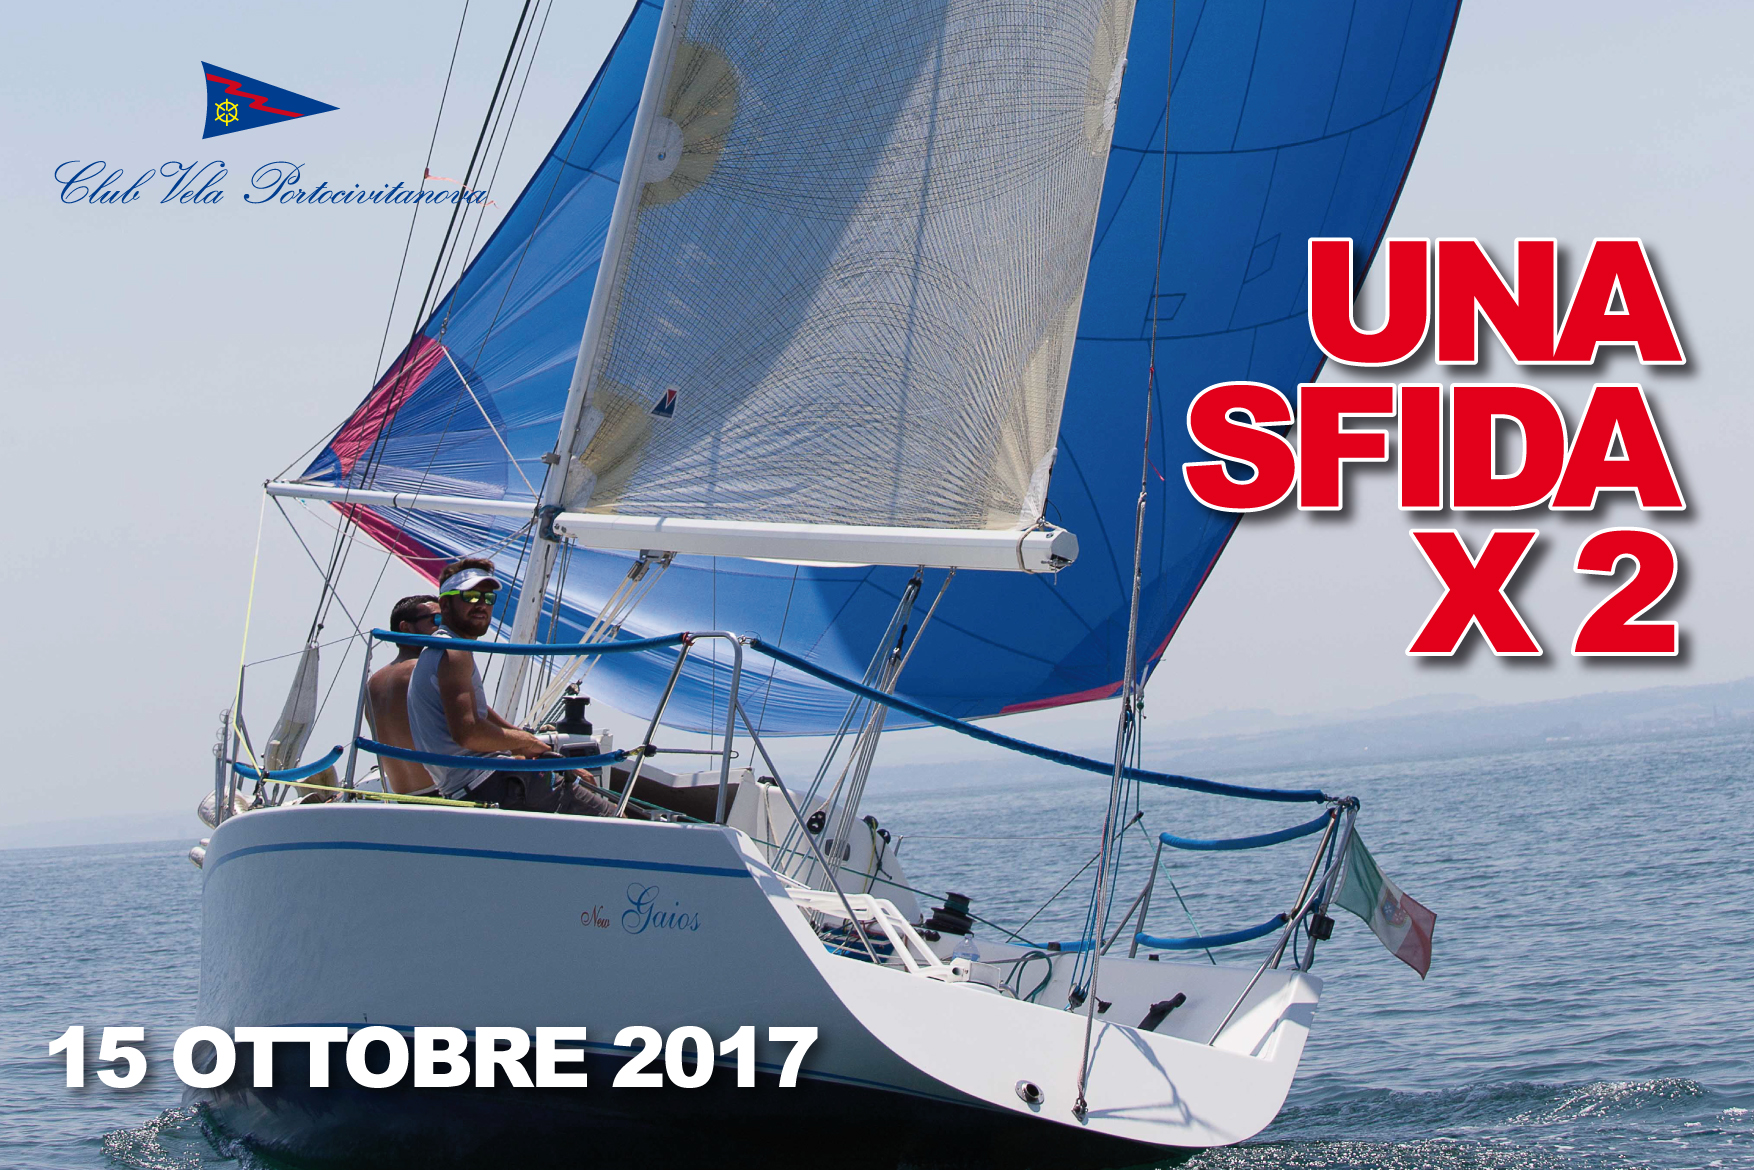 15 ottobre 2017 – UNA SFIDA X 2 (valida Palo d’Oro)